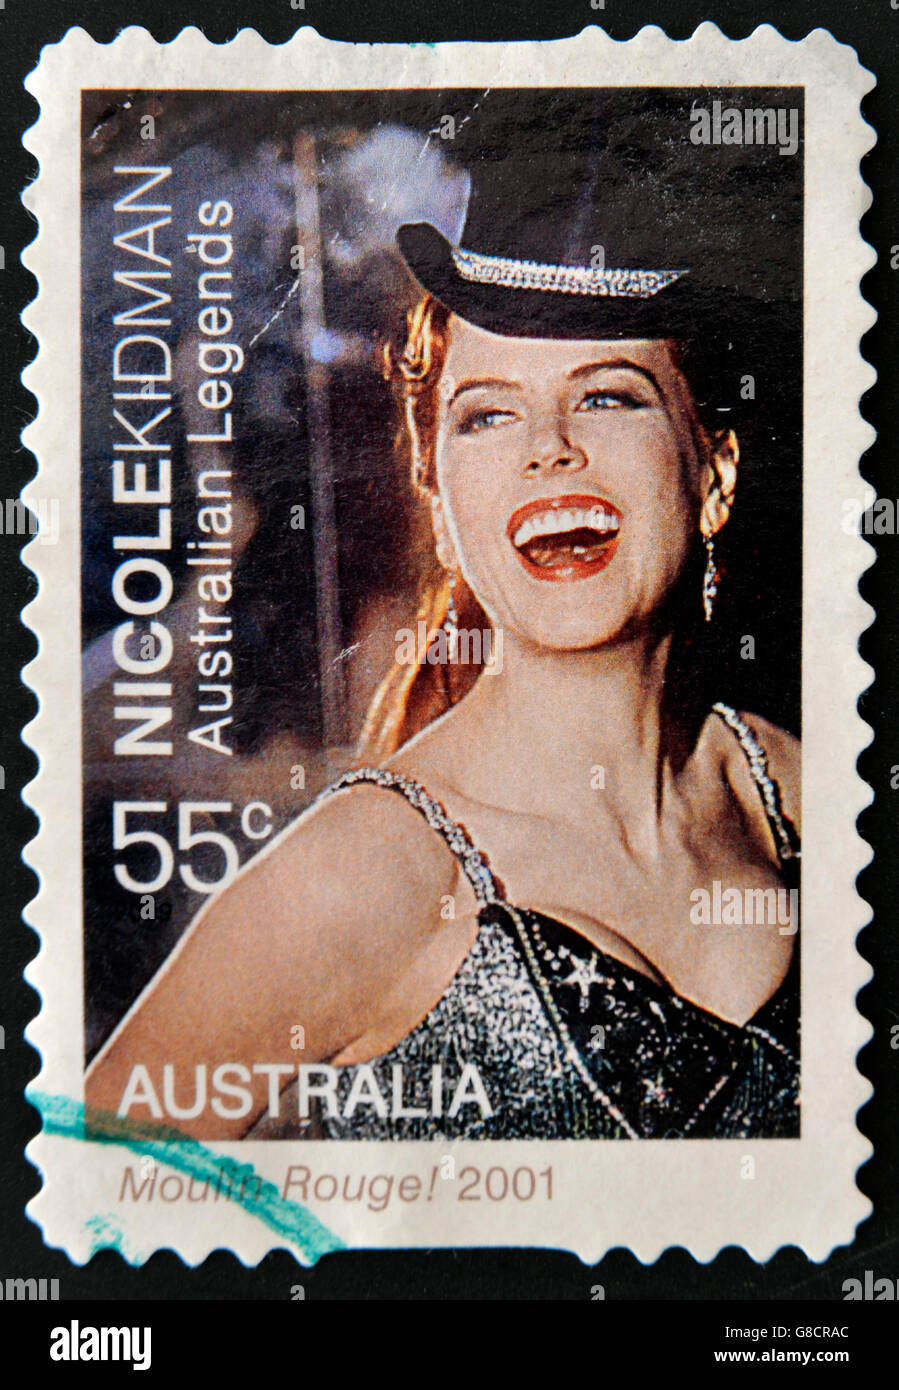 Australien - ca. 2001: Eine Briefmarke gedruckt in Australien zeigt Porträt von Nicole Kidman in dem Film "Moulin Rouge", ca. 2001 Stockfoto